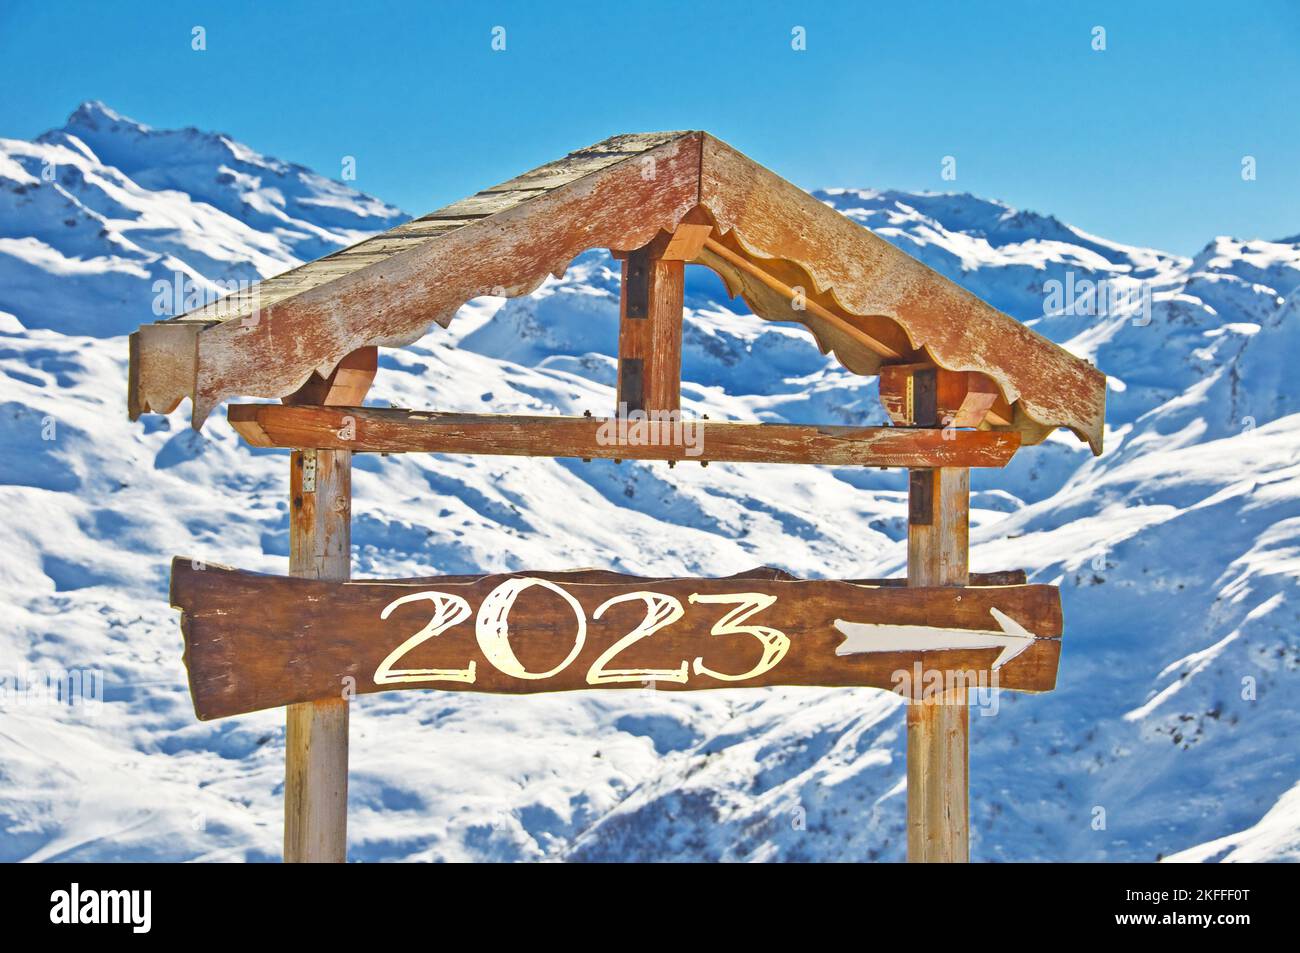 2023 écrit sur un panneau de direction en bois, paysage de montagne enneigé sur le fond, carte de ski nouvel an Banque D'Images